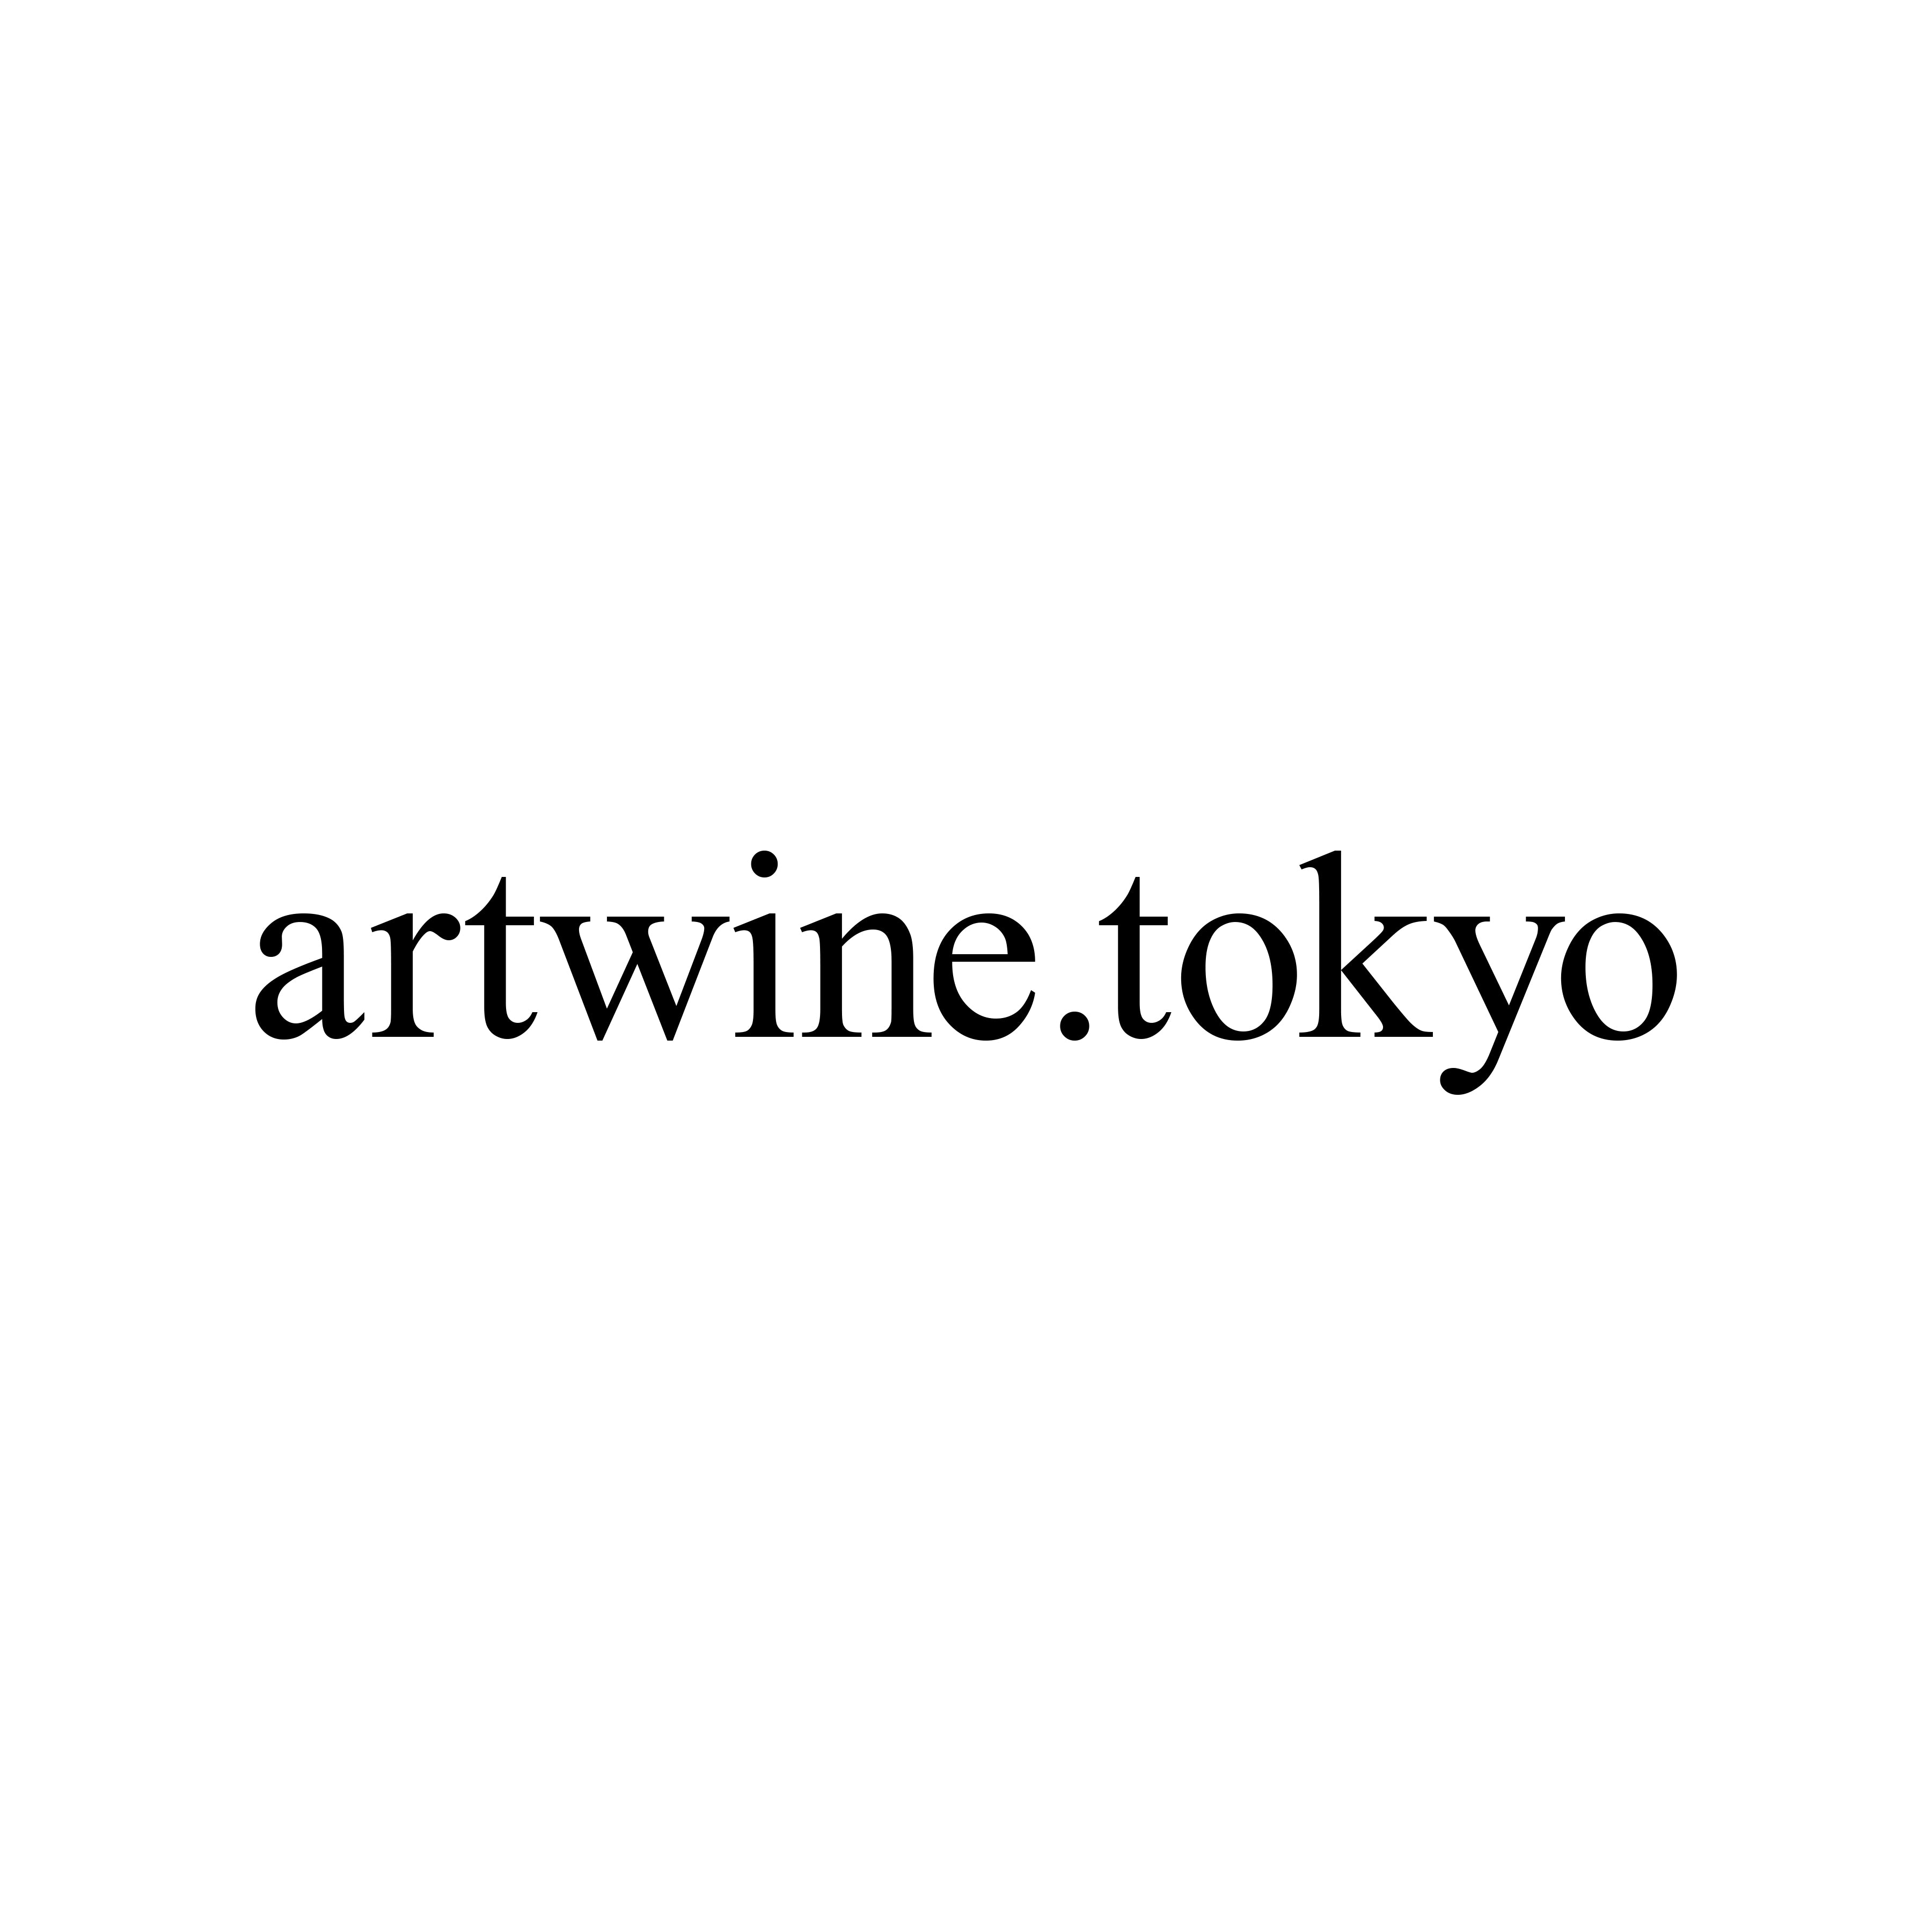 artwine.tokyo日本橋店ワークショップチケット